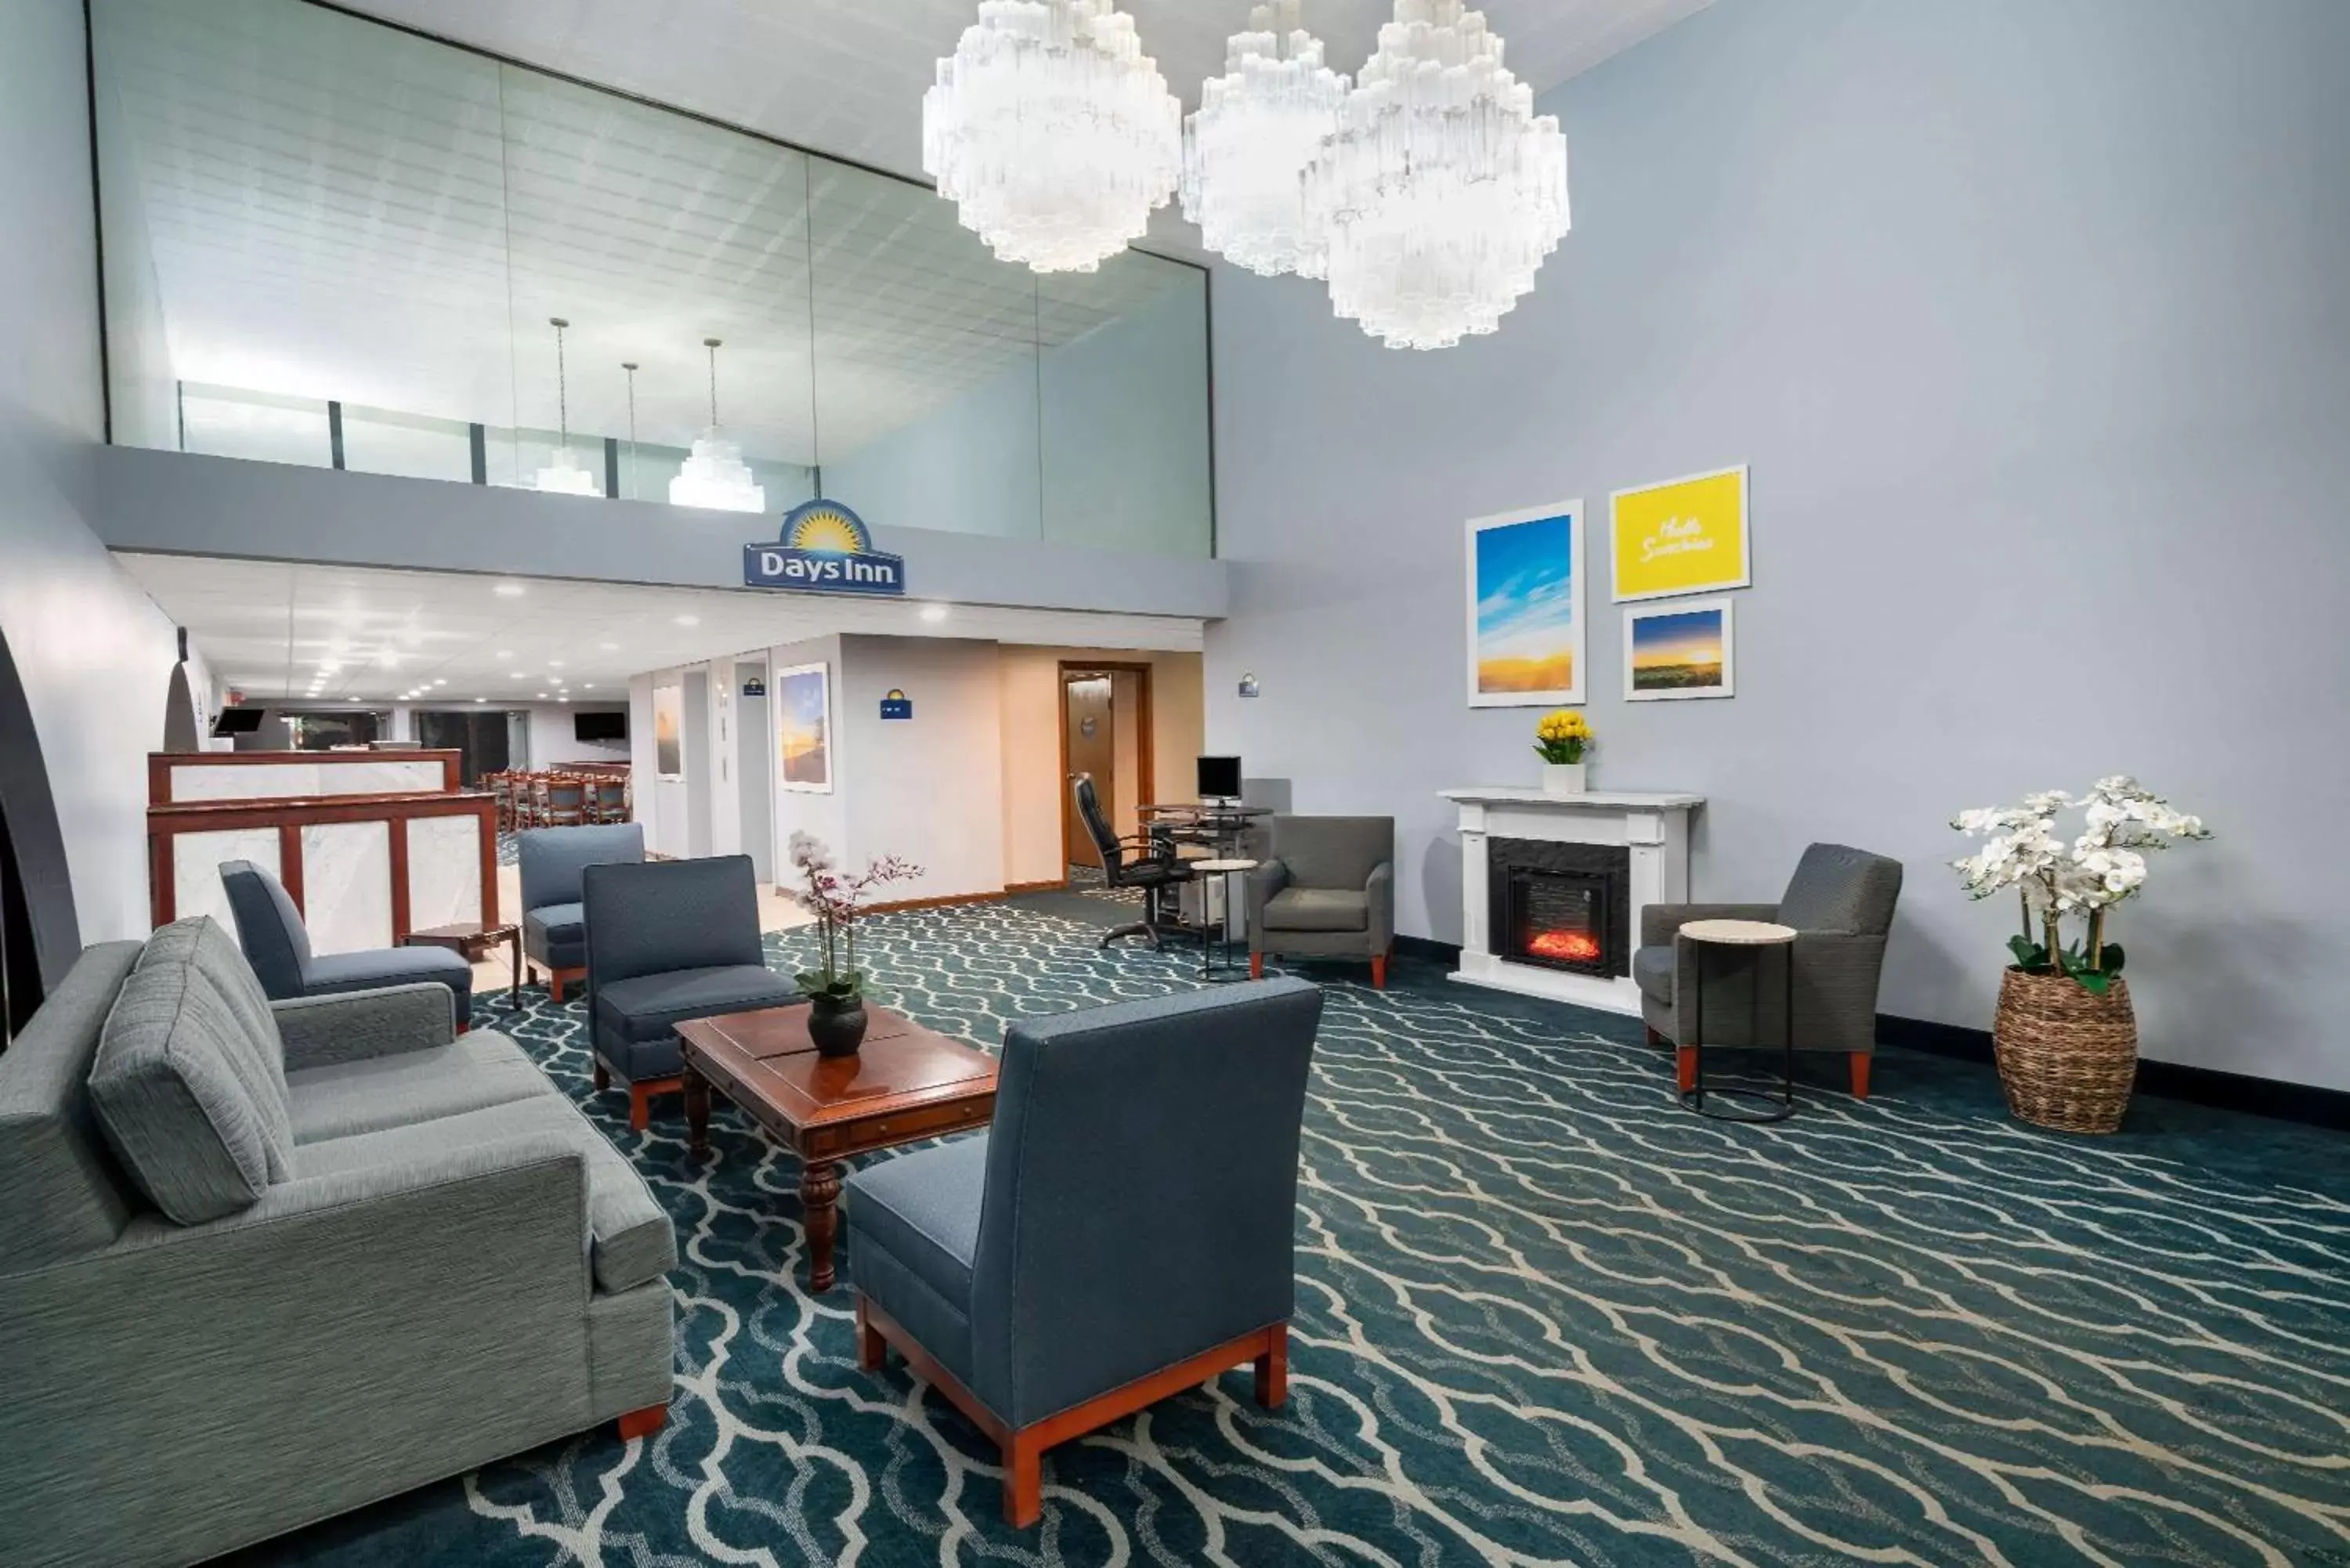 Lobby or reception in Days Inn by Wyndham Scranton PA